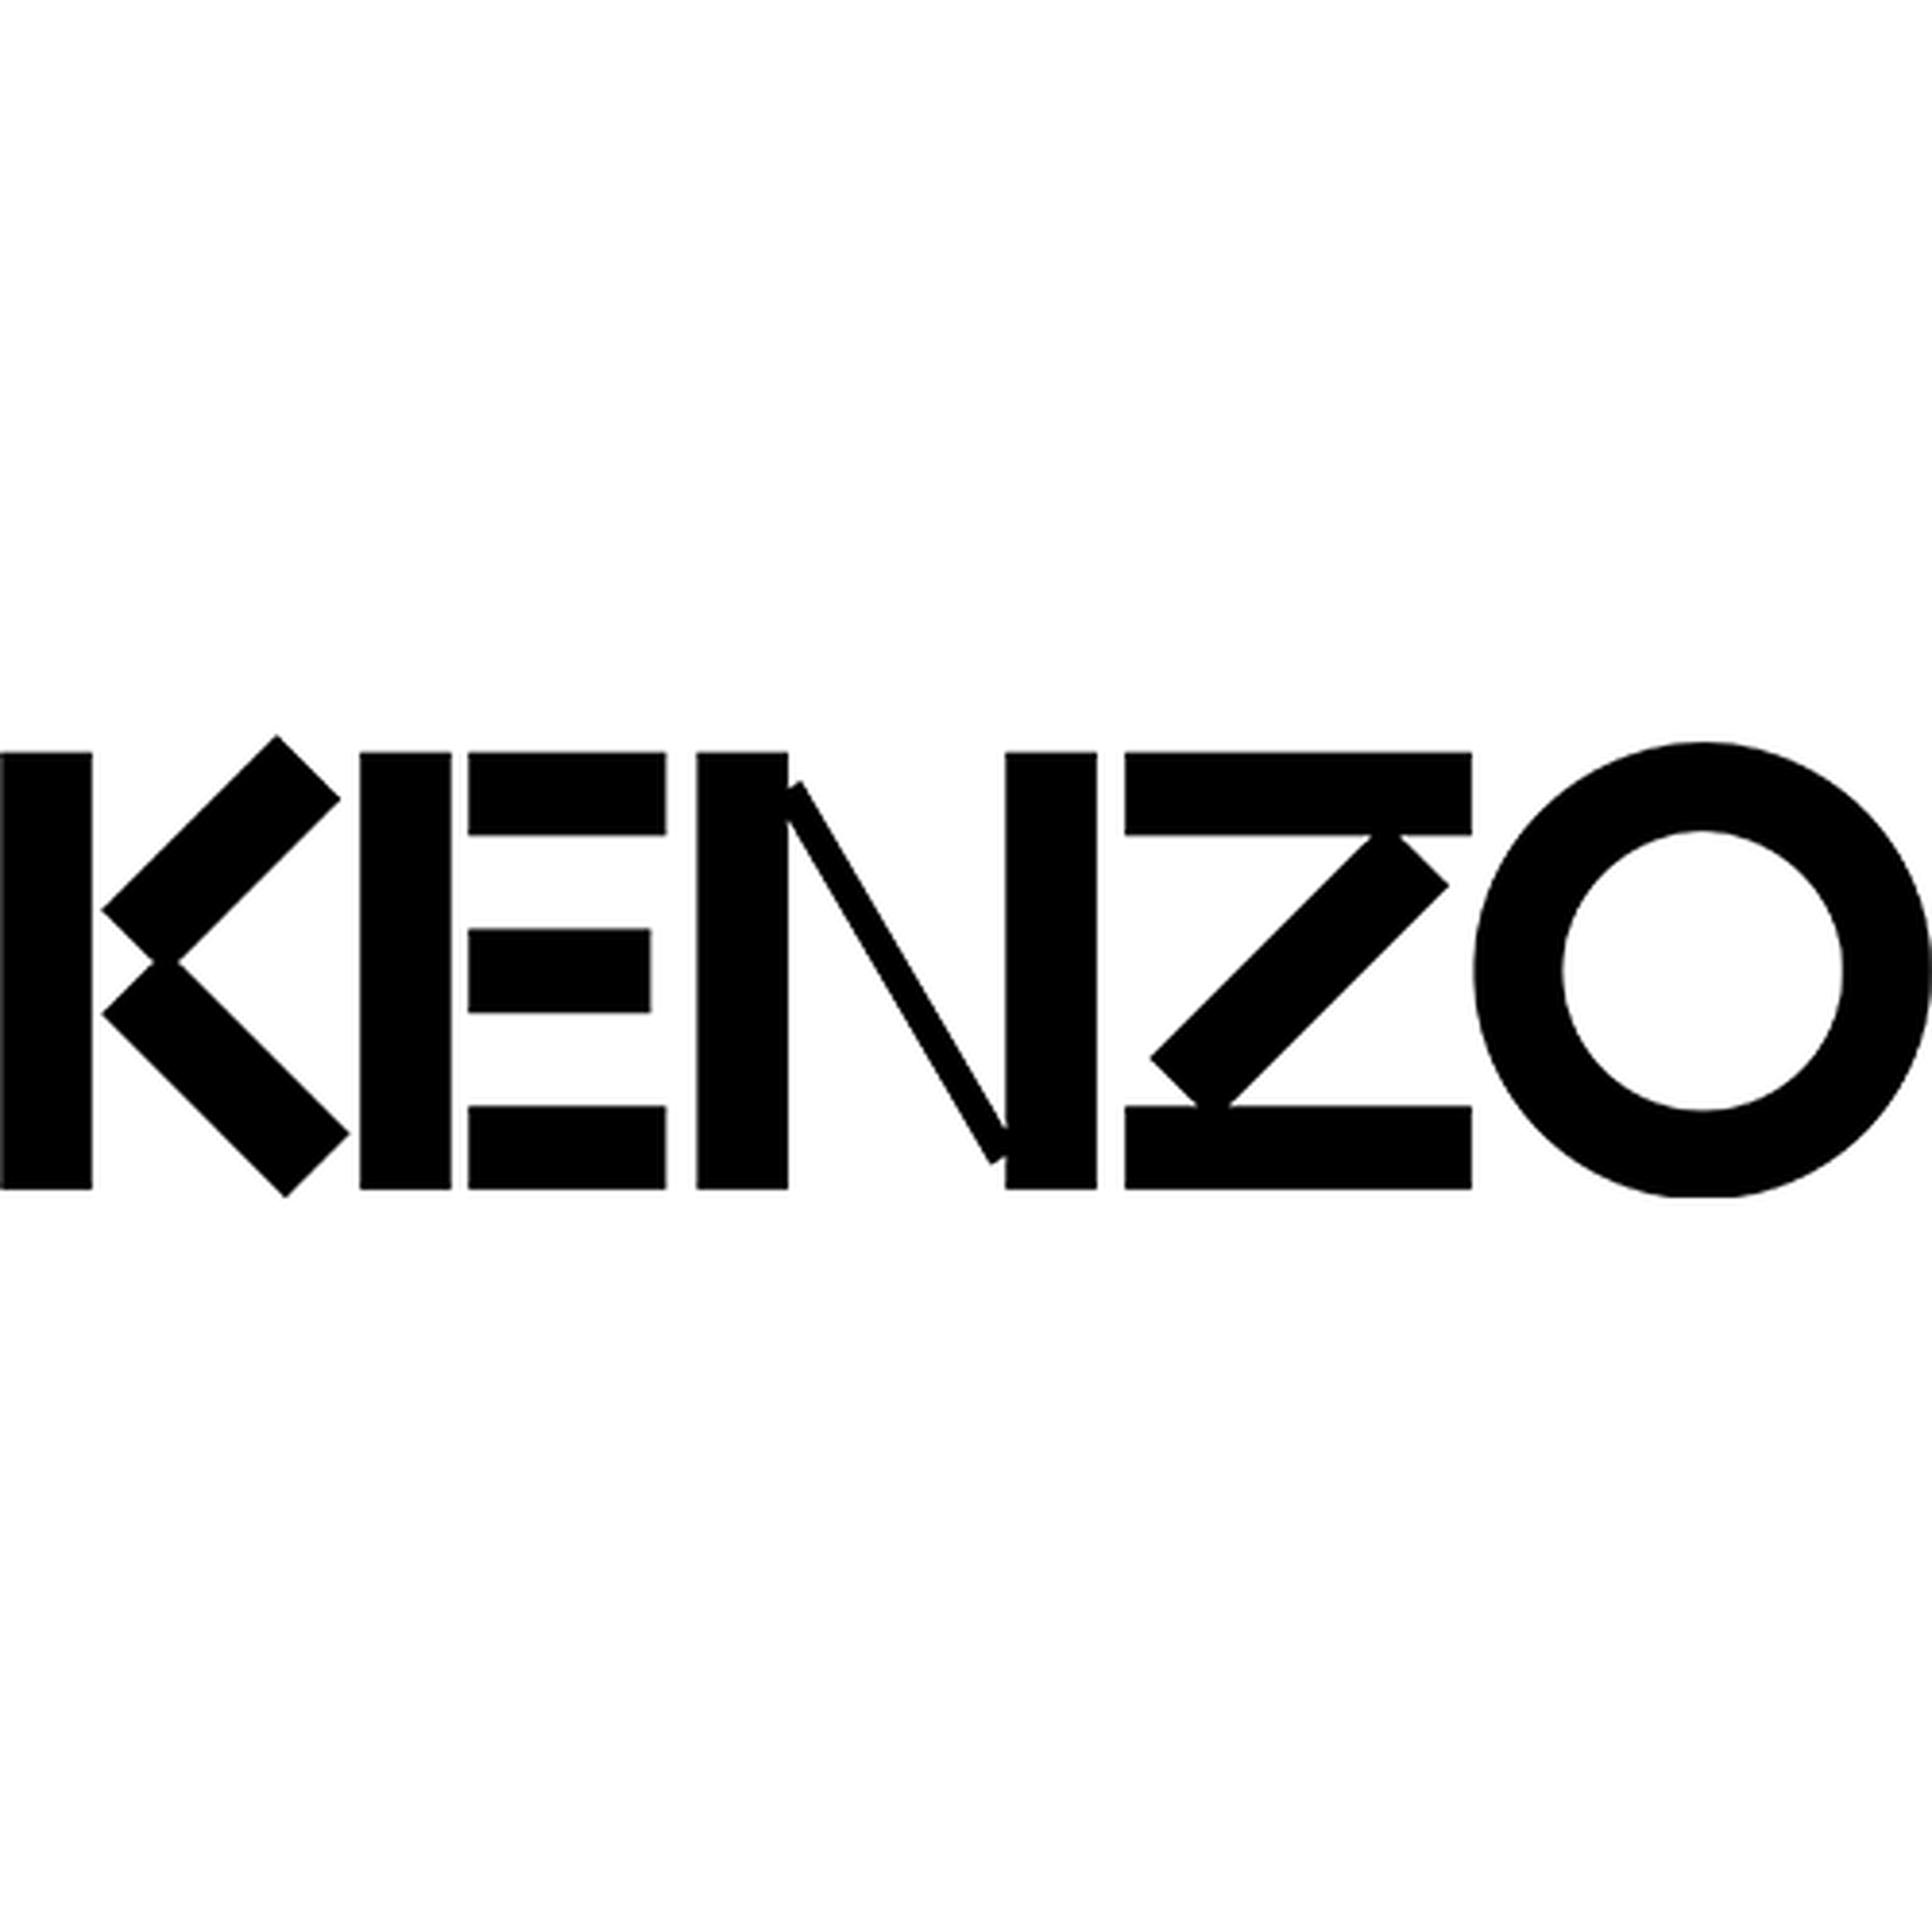 Kenzo logotype